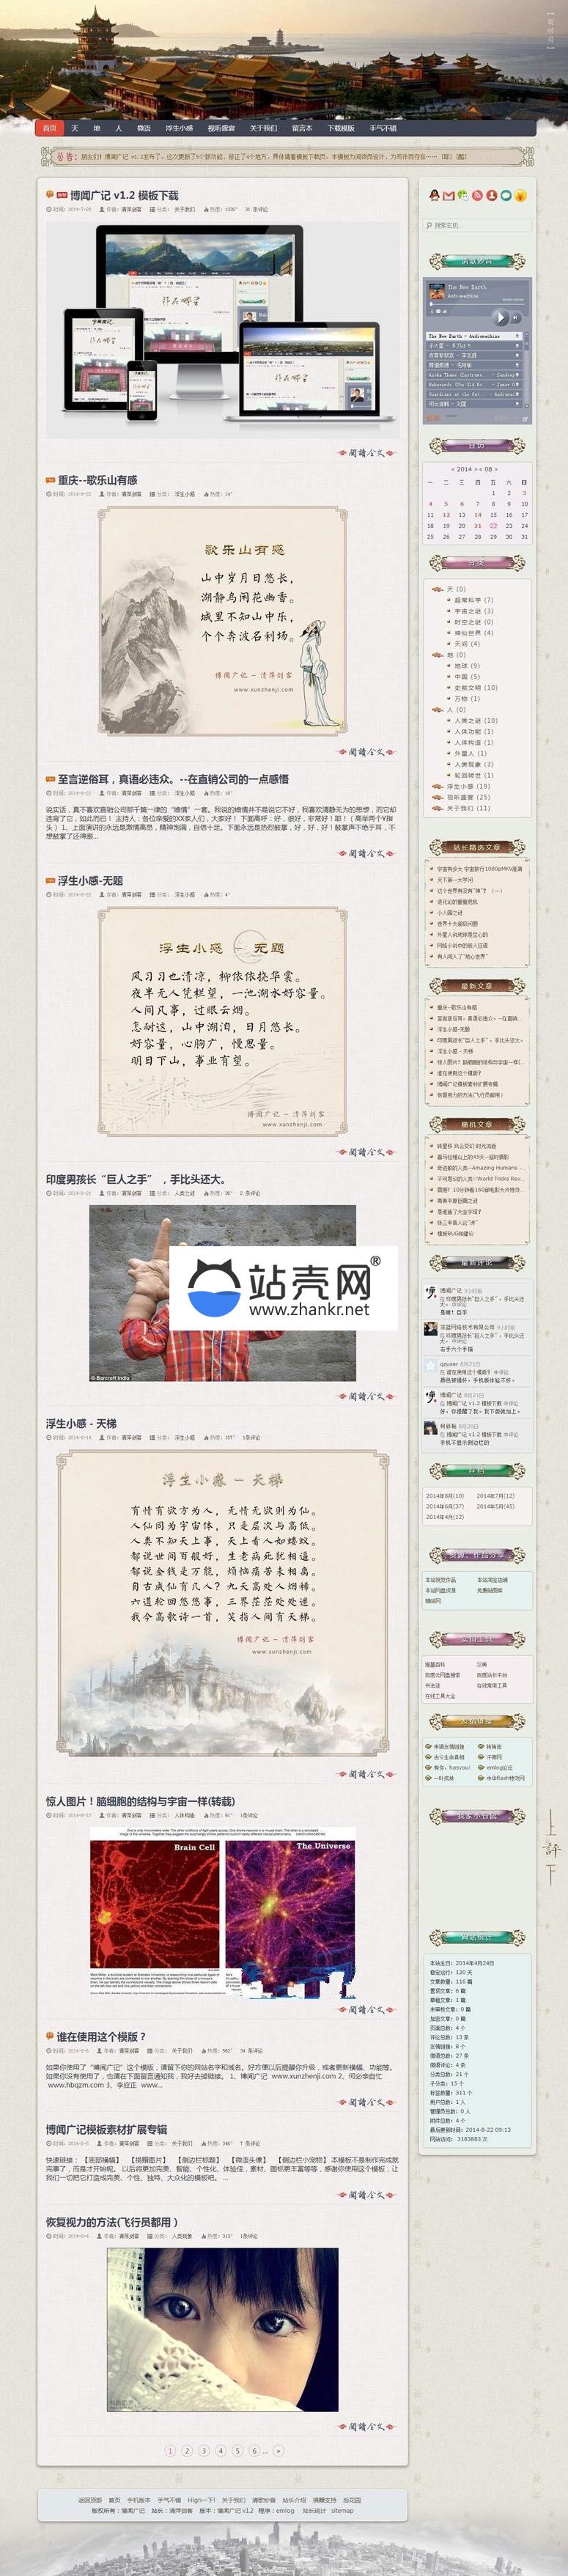 古典中国风大气响应式emlog个人博客主题模板_源码下载插图源码资源库